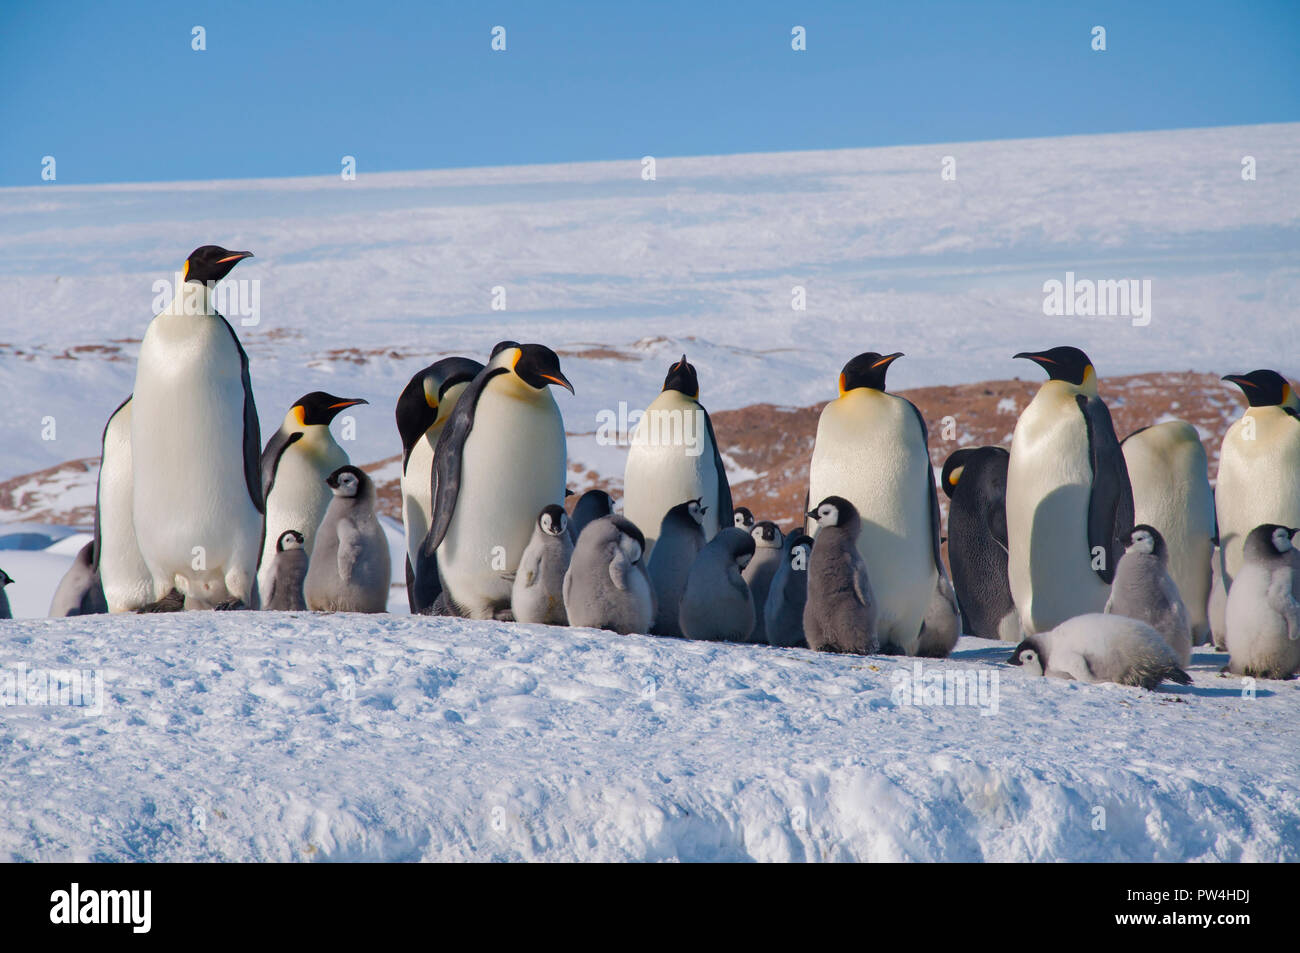 Kolonie, Herde - Kaiserpinguine in der Antarktis. Pinguine stehen an einem sonnigen Tag mit ihren Jungen in den Schnee. Antarktis. Stockfoto